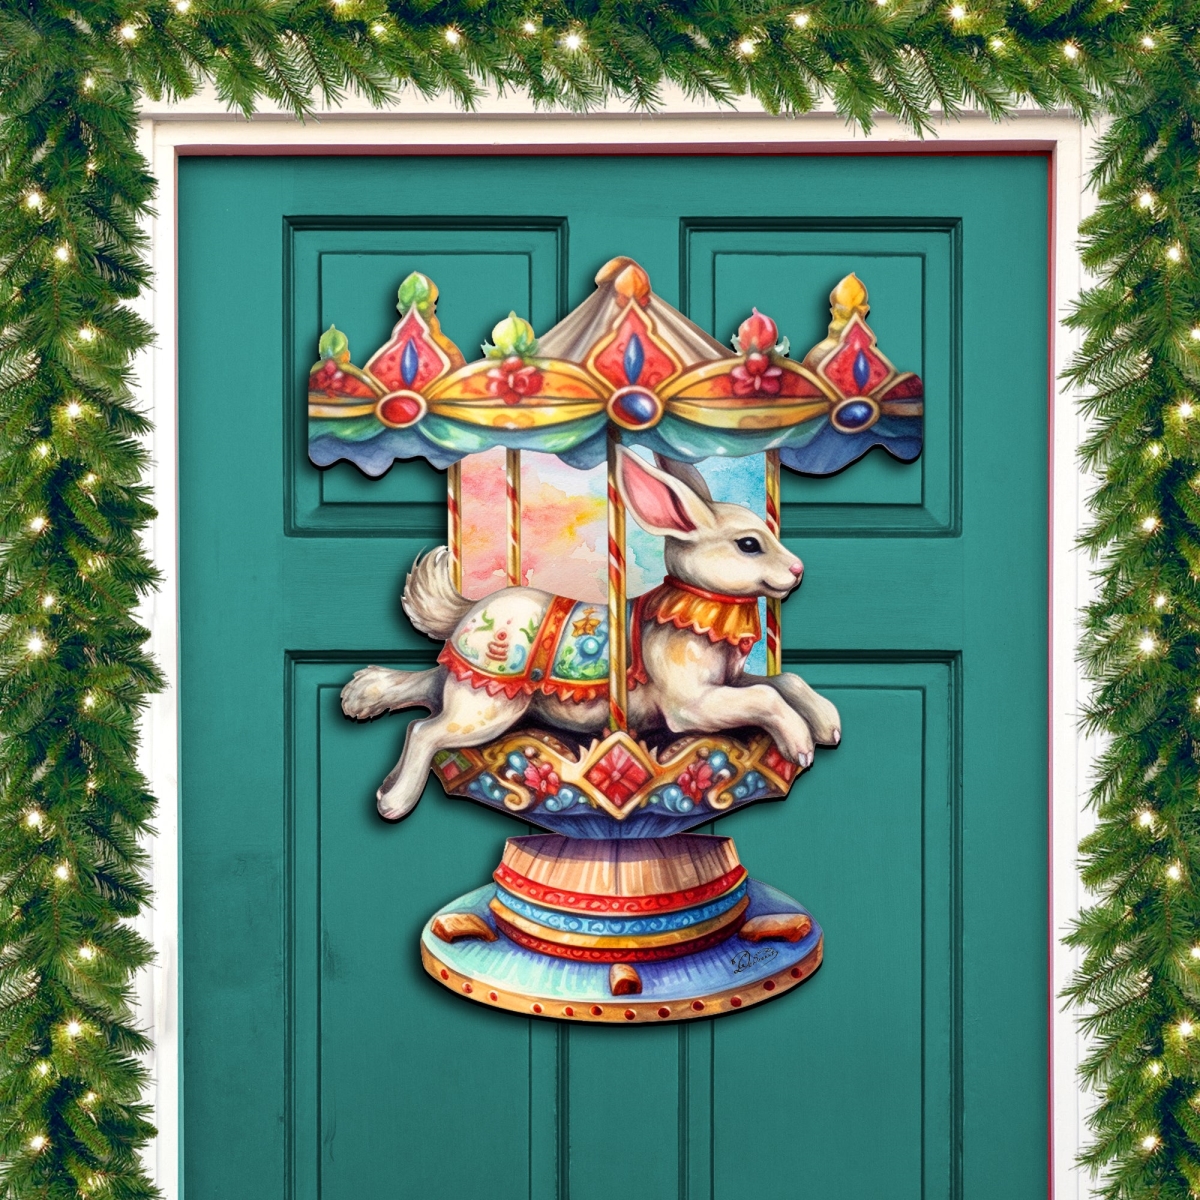 Clean Choice 24 x 18 in. Carousel Bunny Holiday Christmas Door Decor